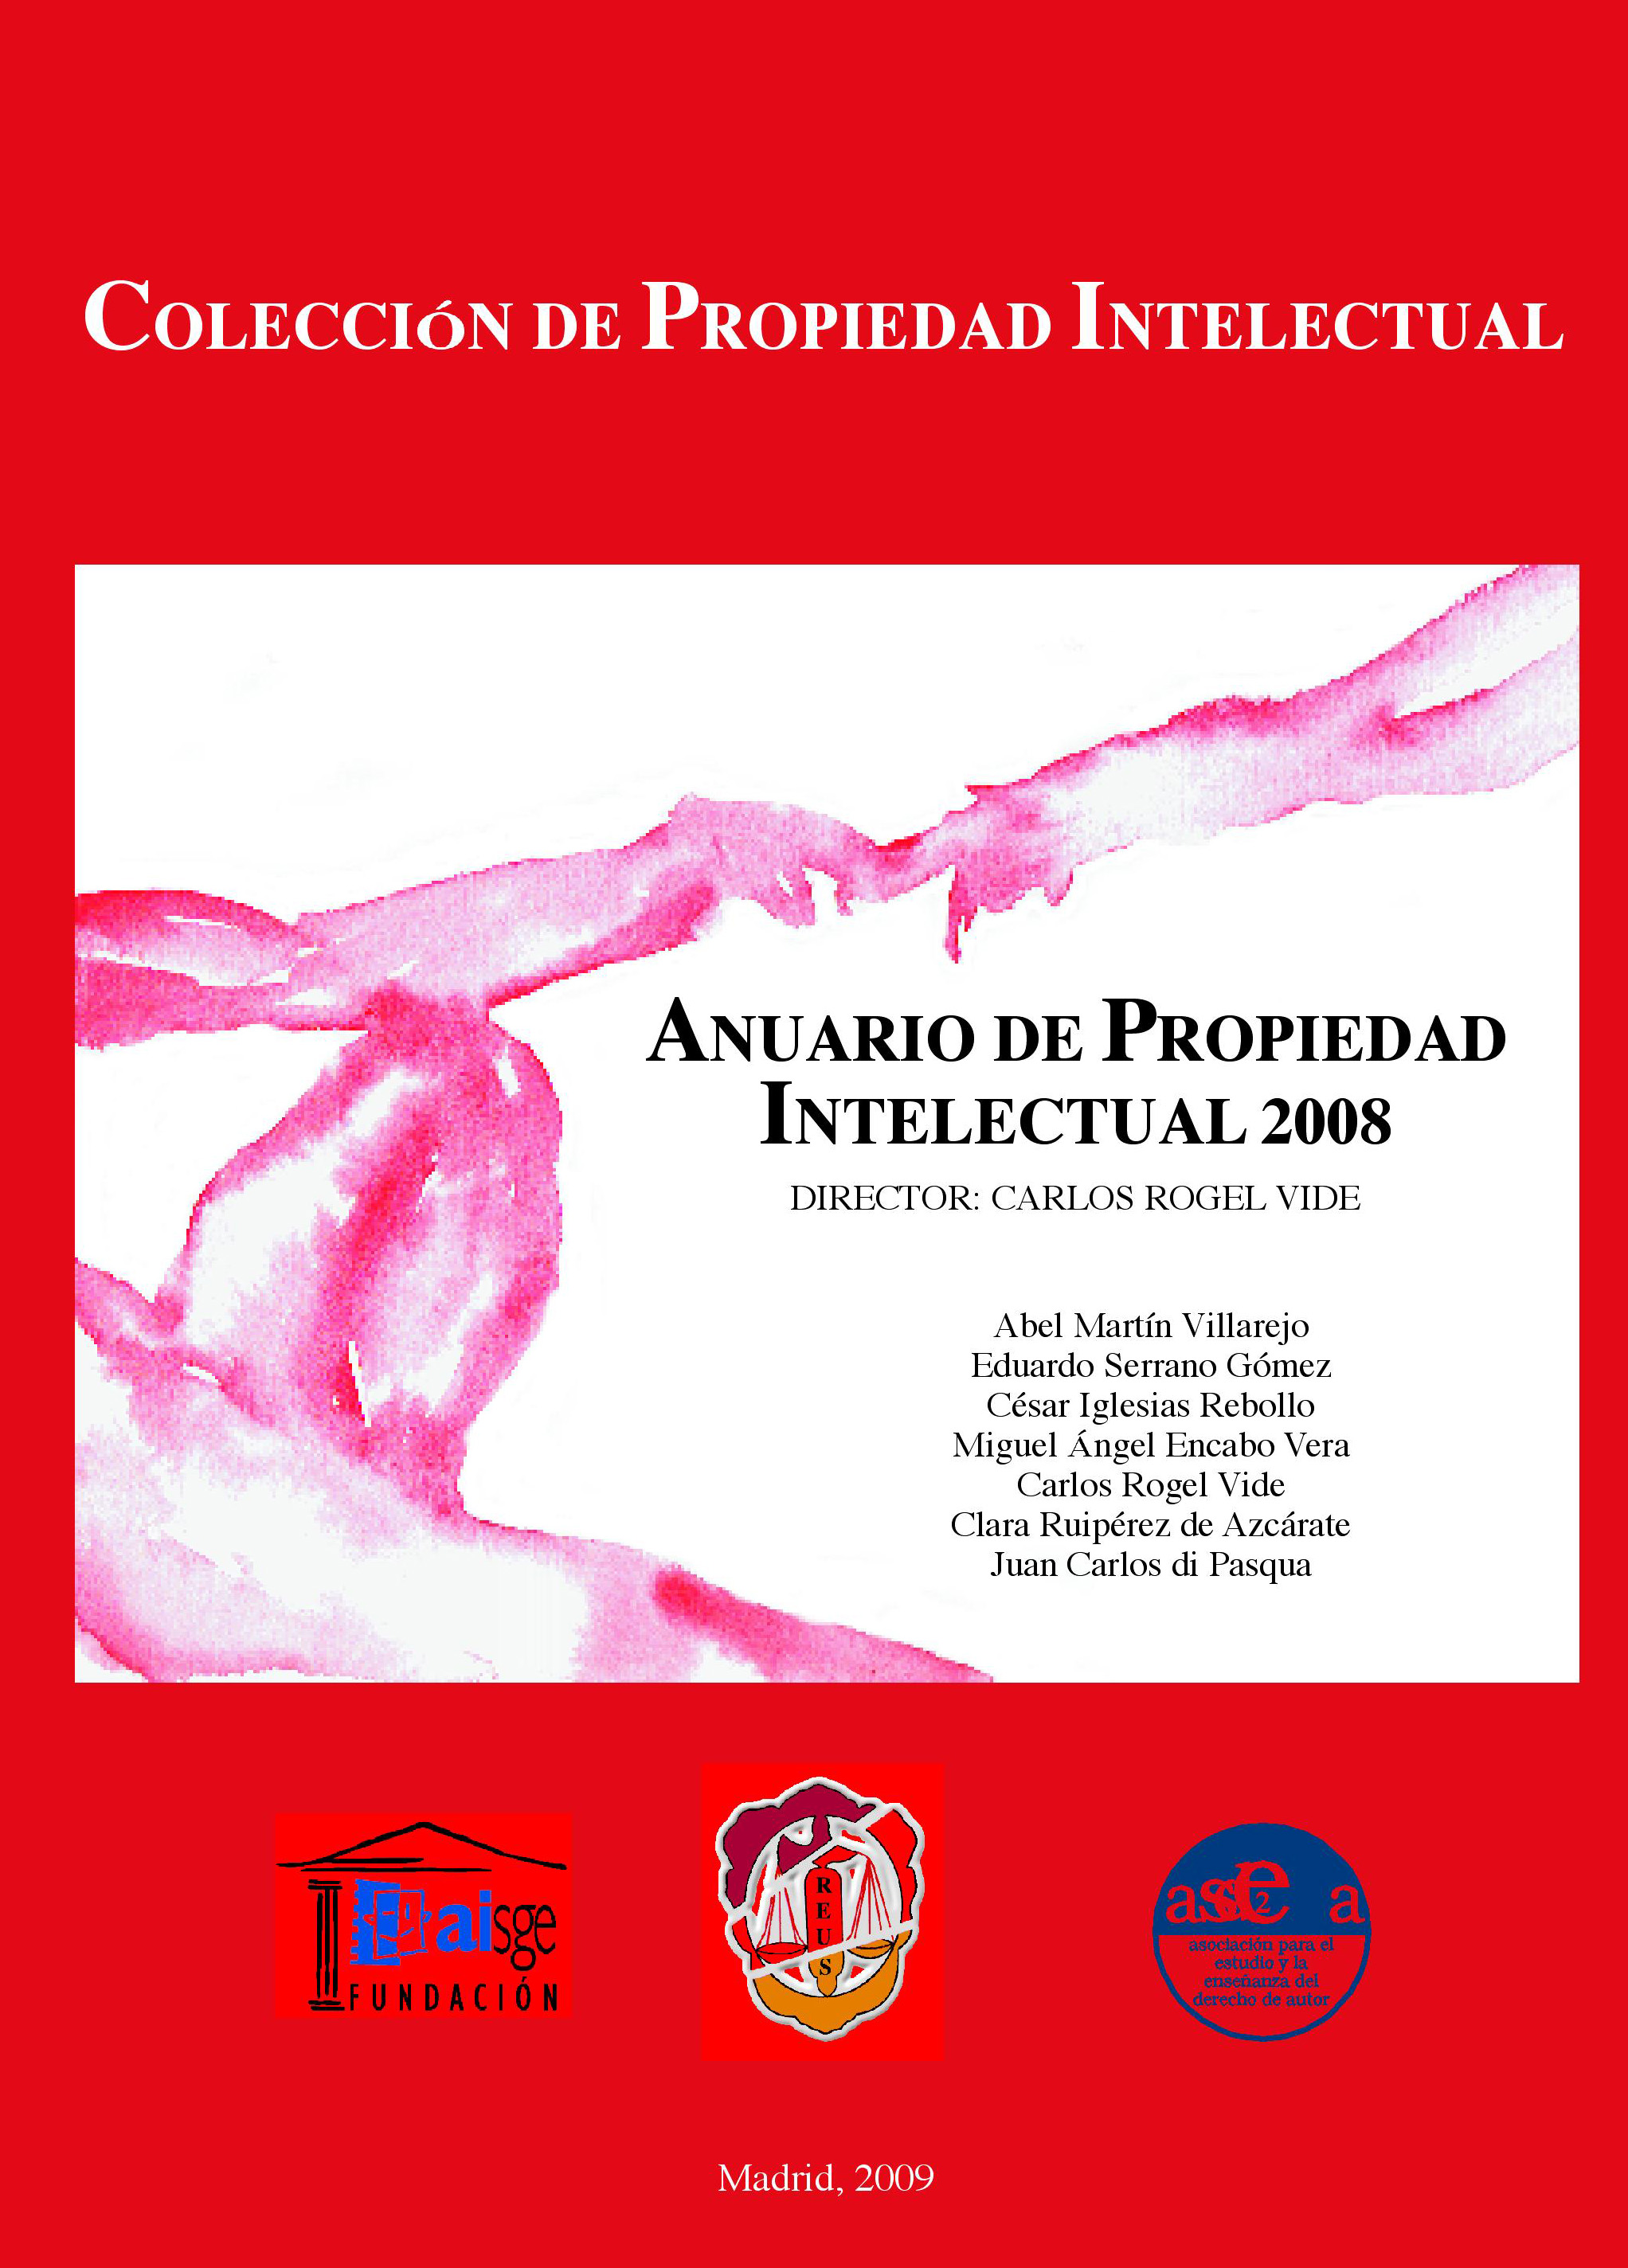 Anuario de propiedad intelectual 2008